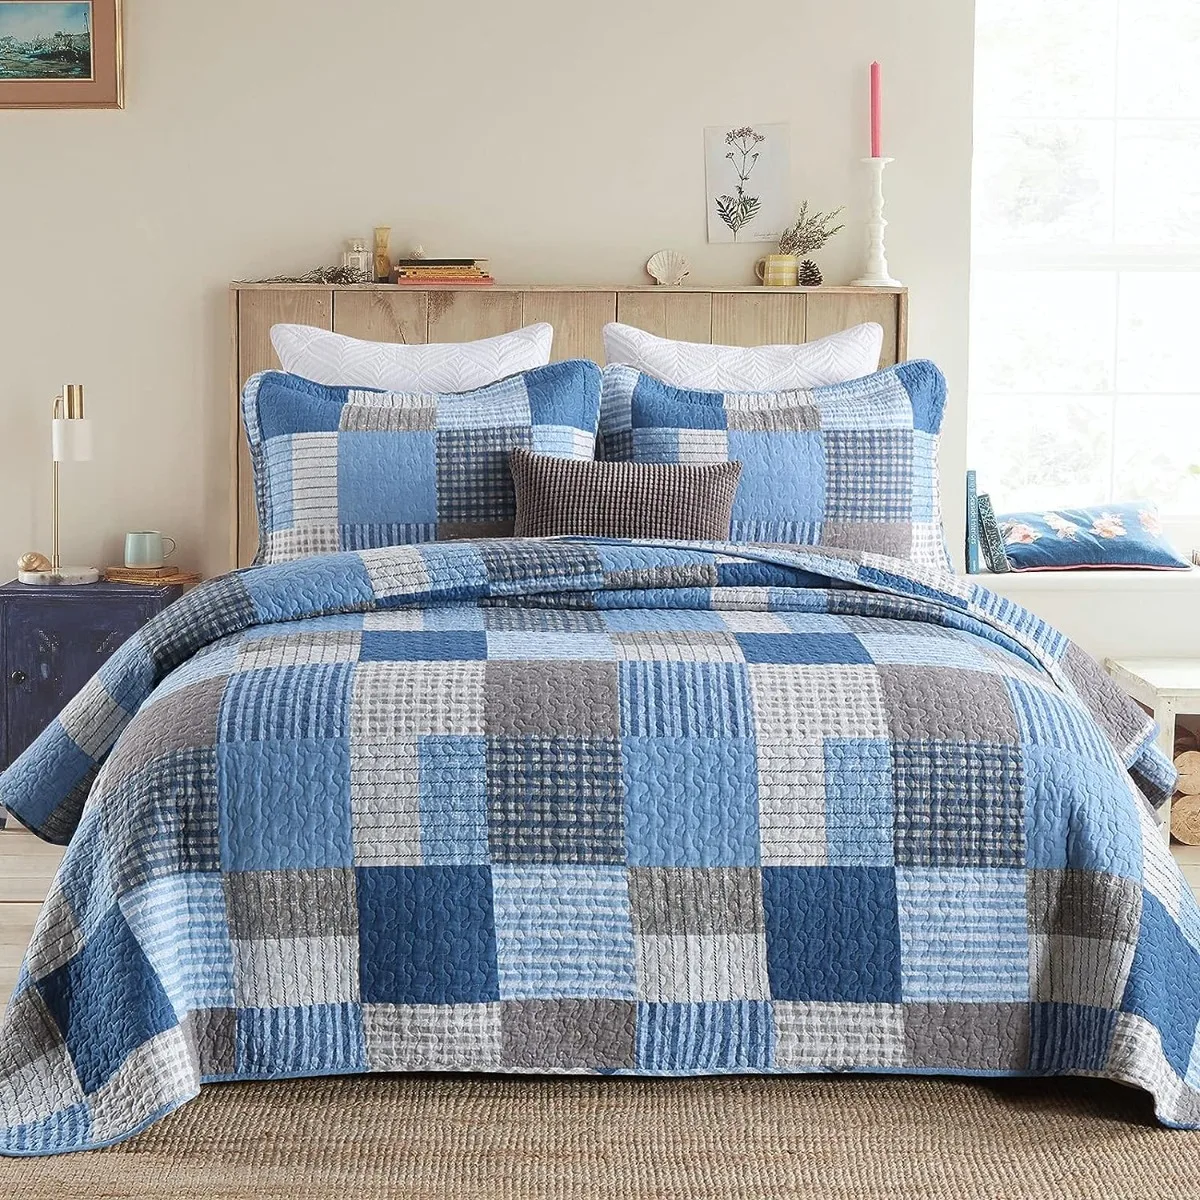 

Комплект стеганого одеяла из 100% хлопка, одеяло королевского размера, легкое двухстороннее одеяло для фермерского хозяйства, синее/темно-синее для всех сезонов, 3 шт.